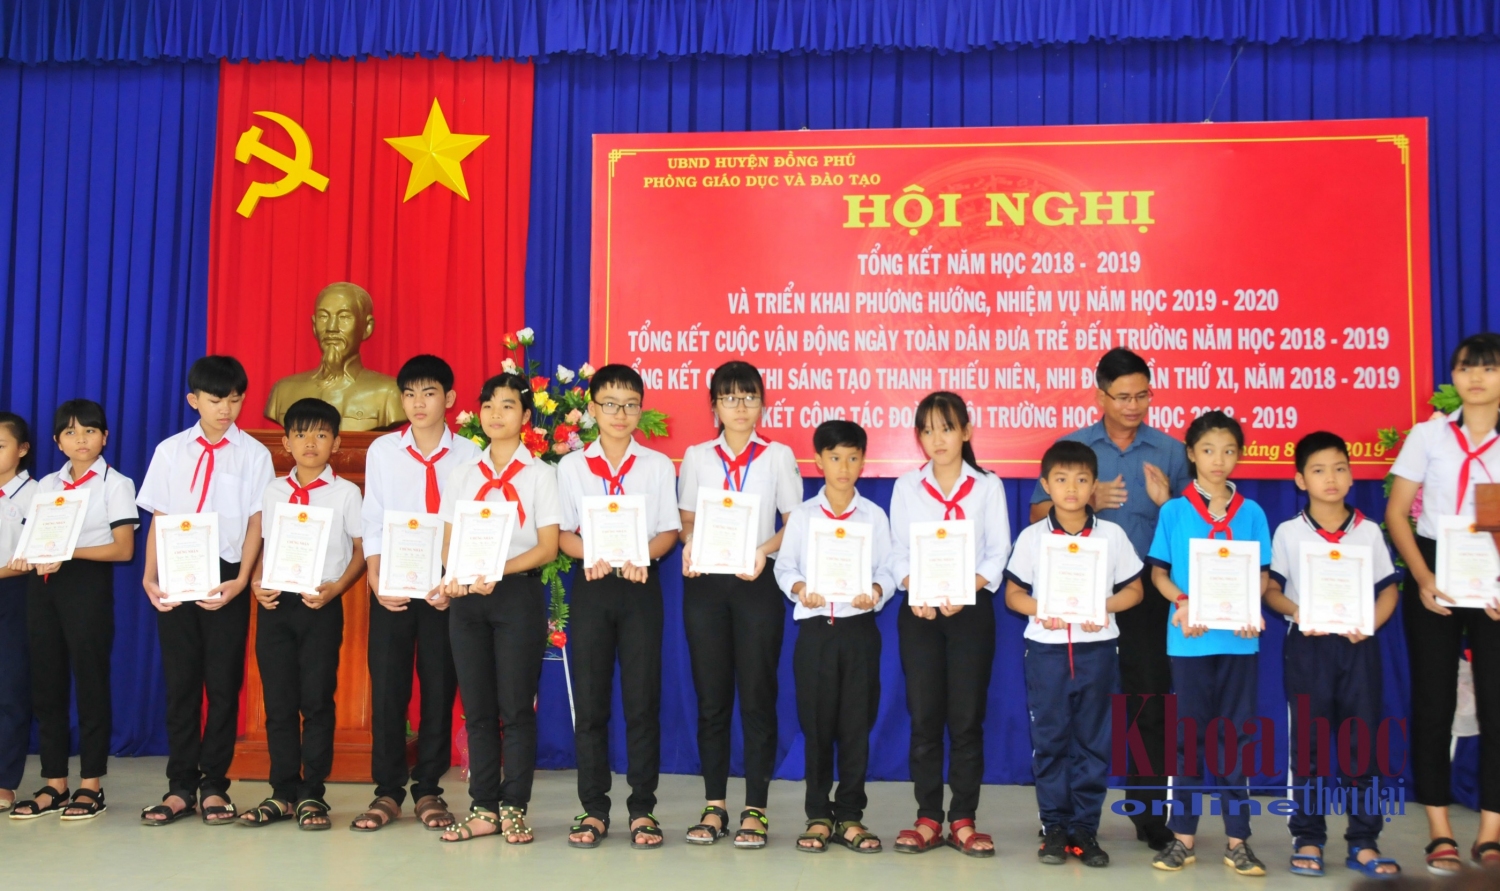 Đại diện Ban Tổ chức trao giấy chứng nhận cho các em học sinh có sản phẩm đạt giải tại Cuộc thi Sáng tạo thanh thiếu niên, nhi đồng huyện lần thứ XI, năm 2018-2019.